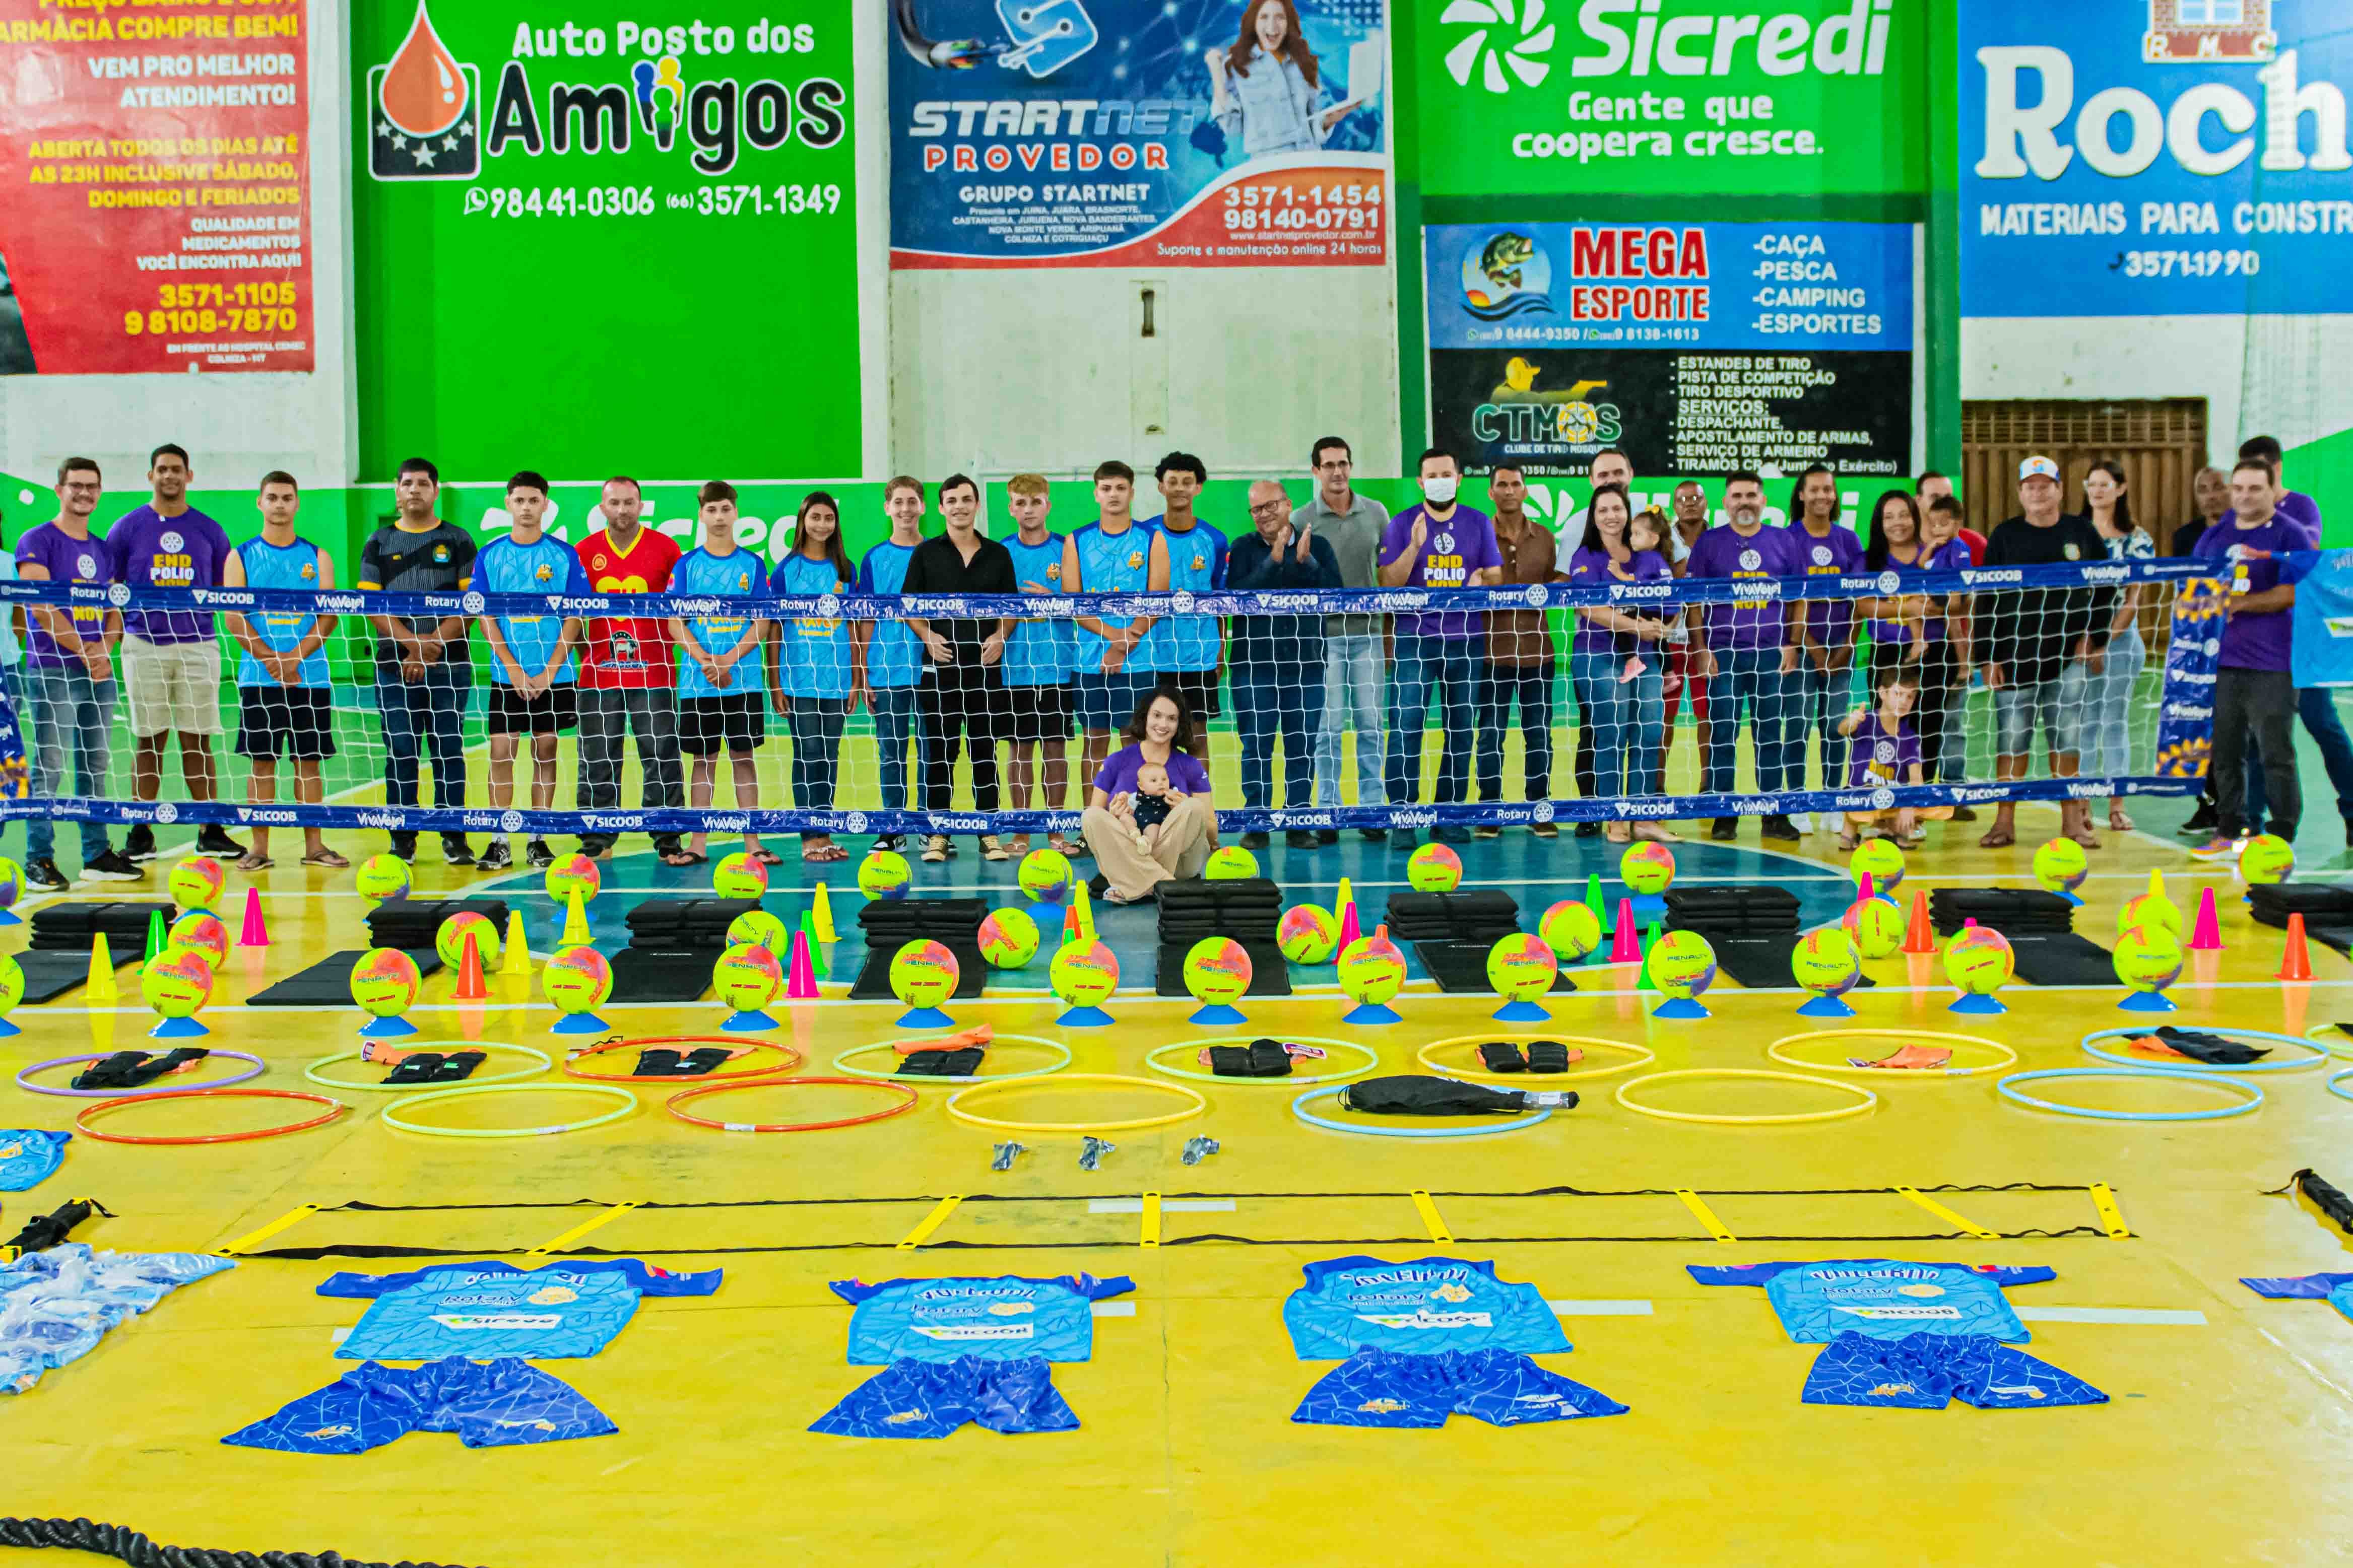 Rotary club de Colniza e cooperativa de crédito Sicoob incentivam o voleibol em Colniza